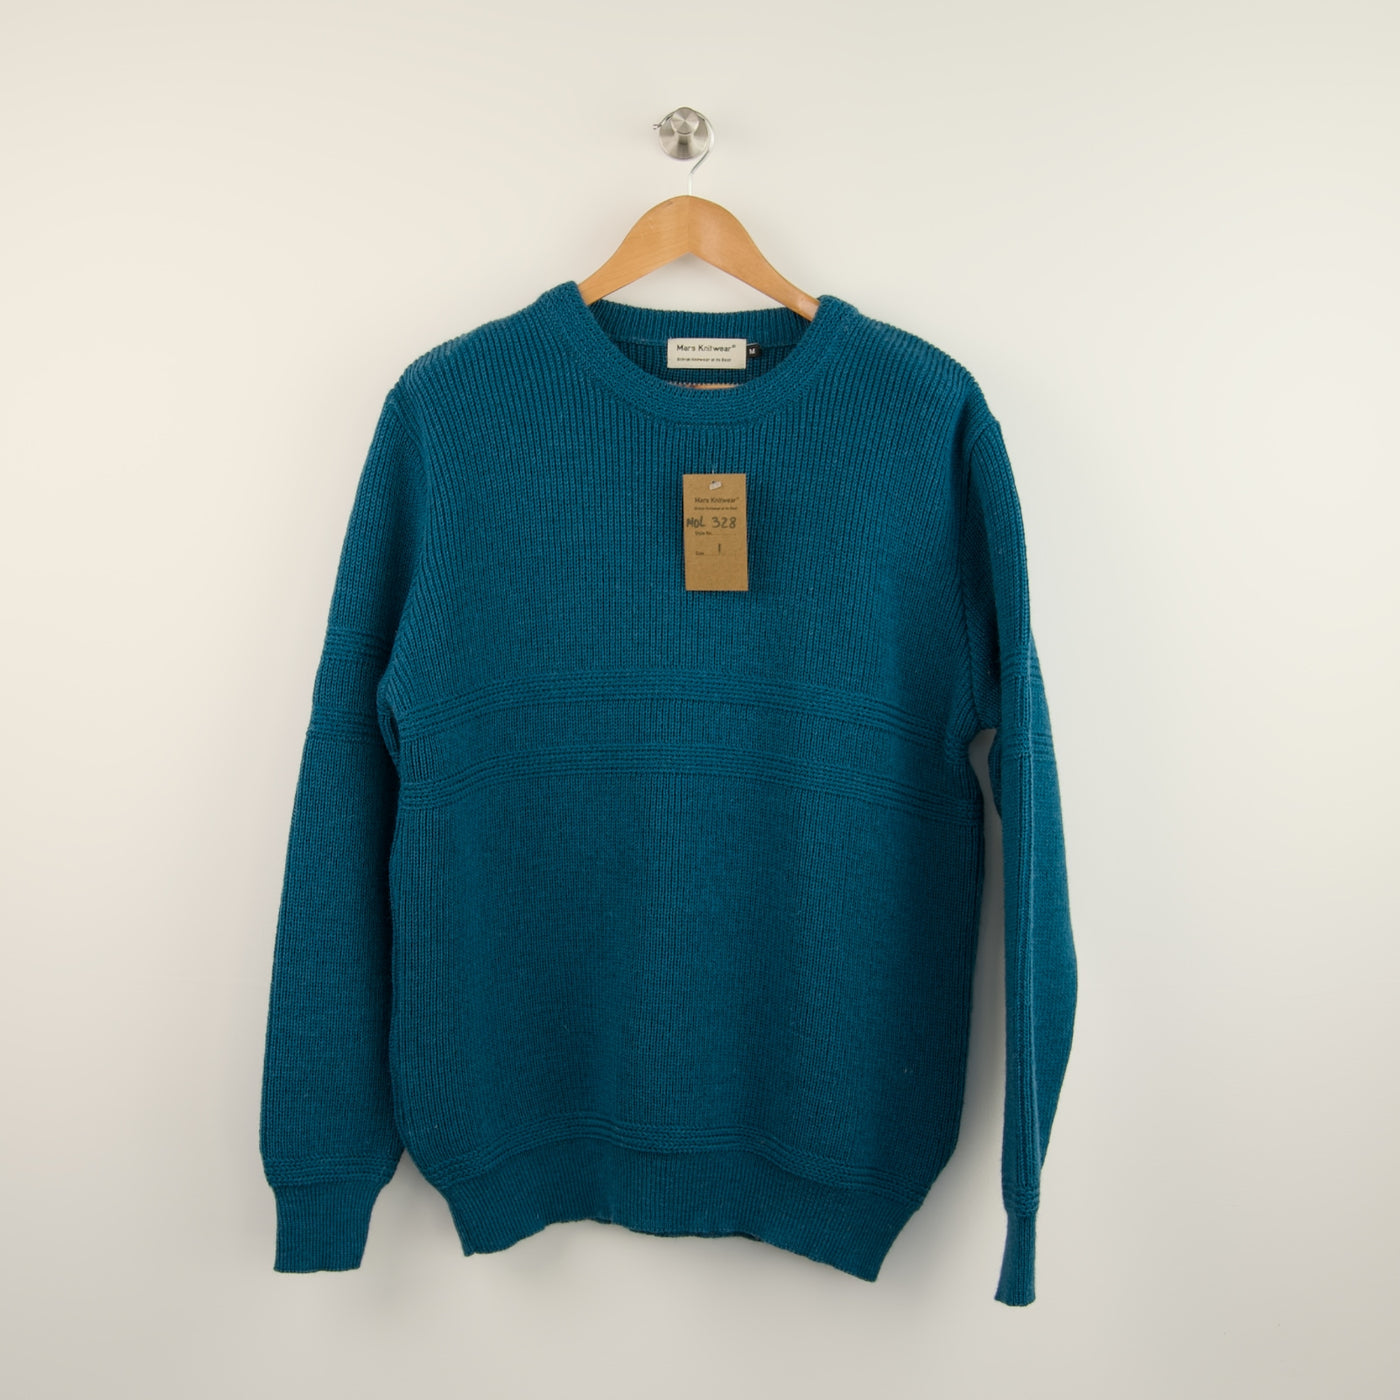 British Wool Gansey - 328 - Turquoise